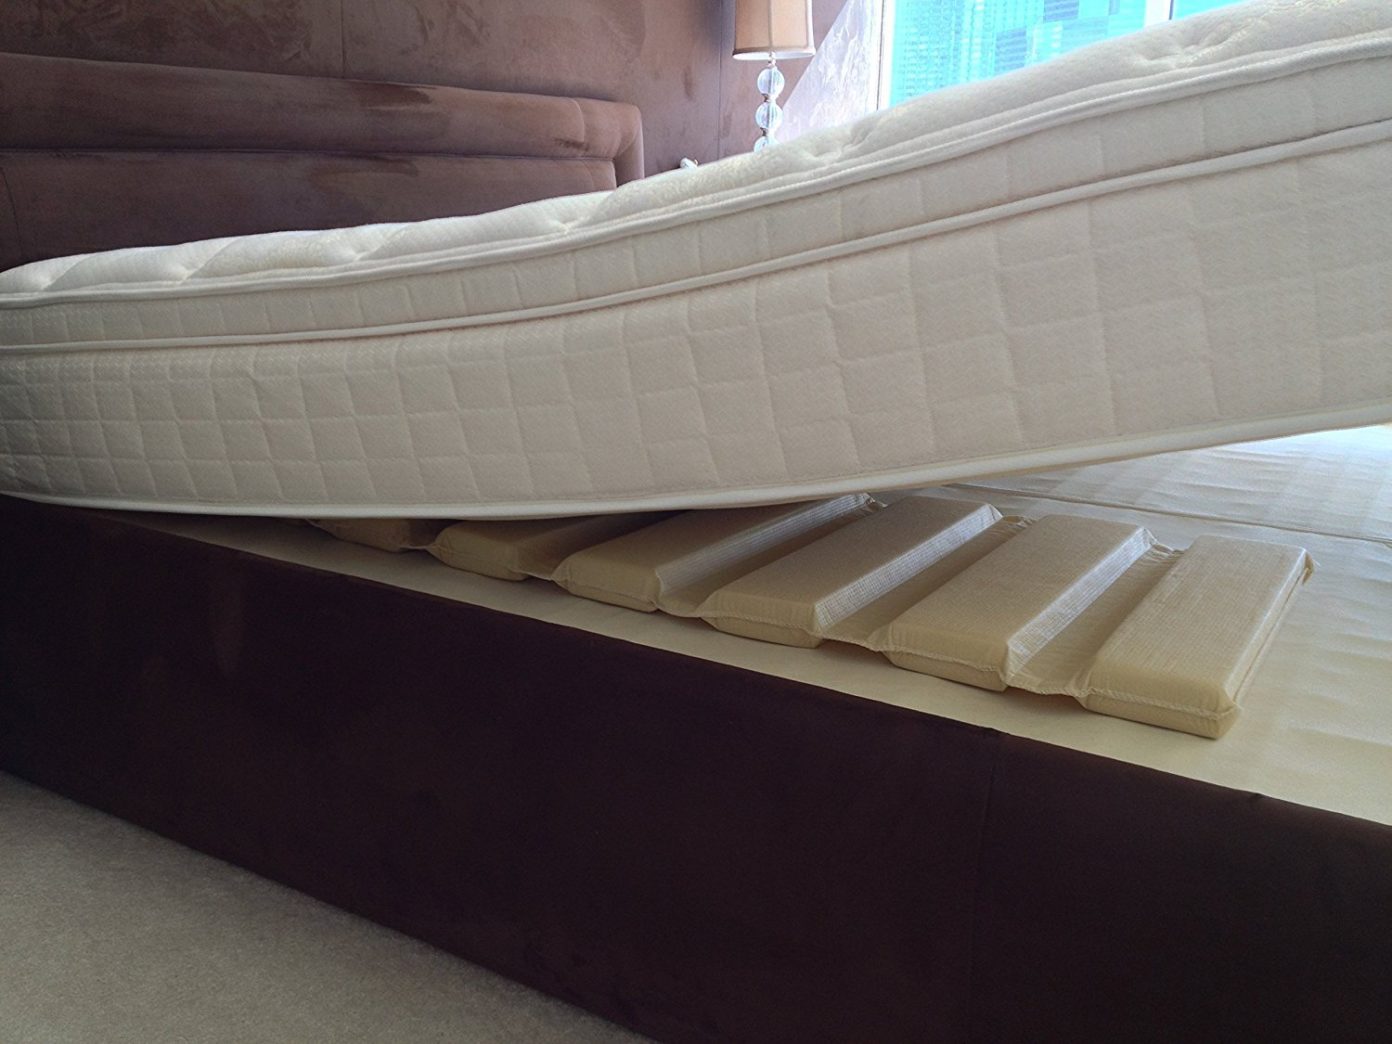 putting mattress topper under mattress